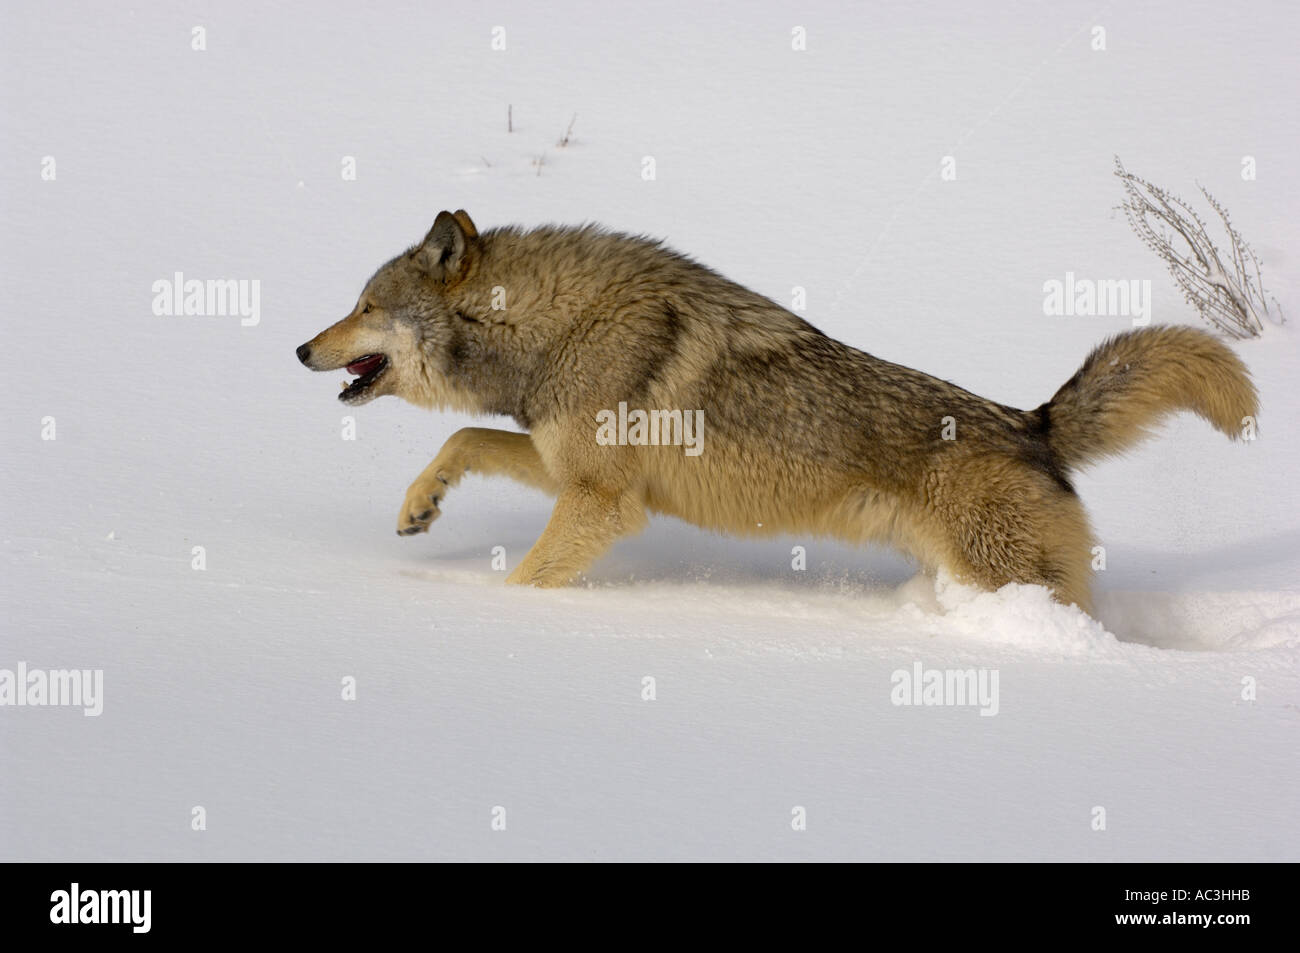 Lobo gris American Canis lupis ejecutando en nieve fotografiado en EE.UU. Foto de stock